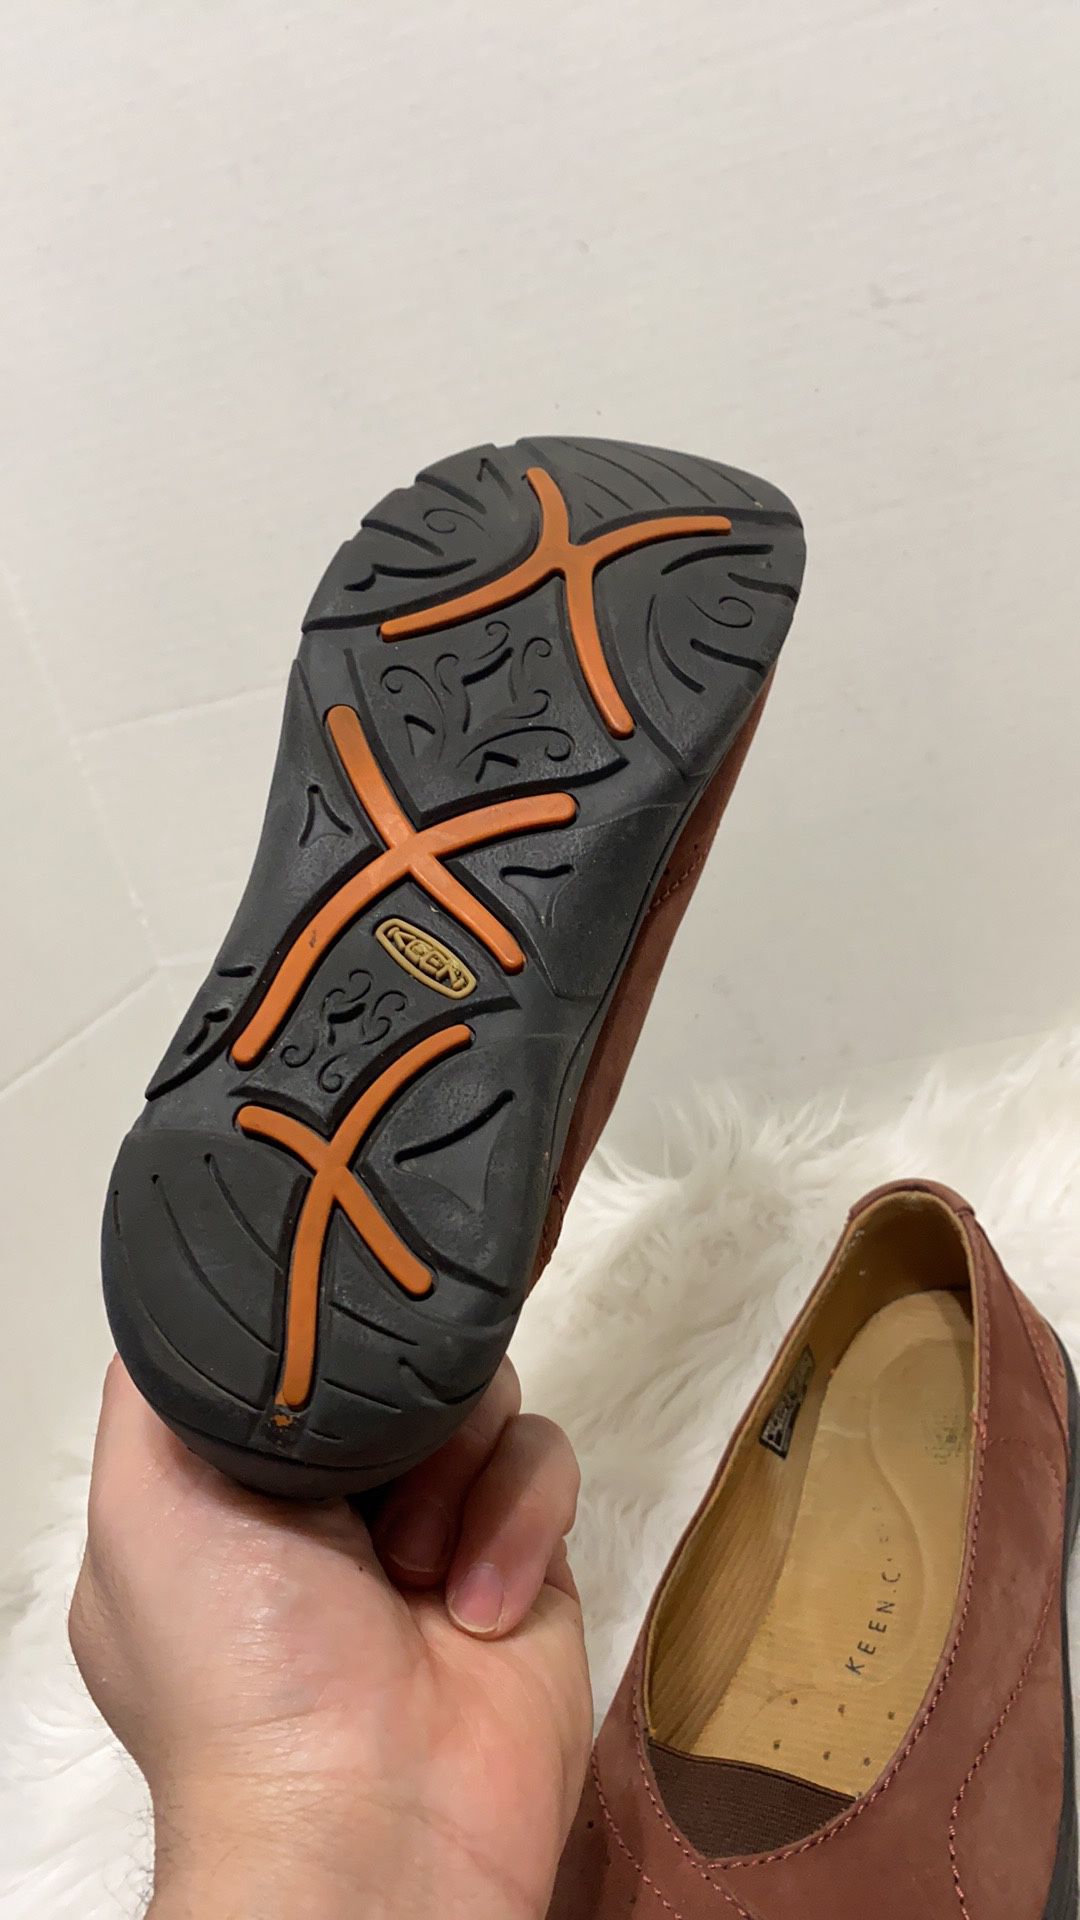 Keen Women Shoe Sterling City loafer Size 9.5 